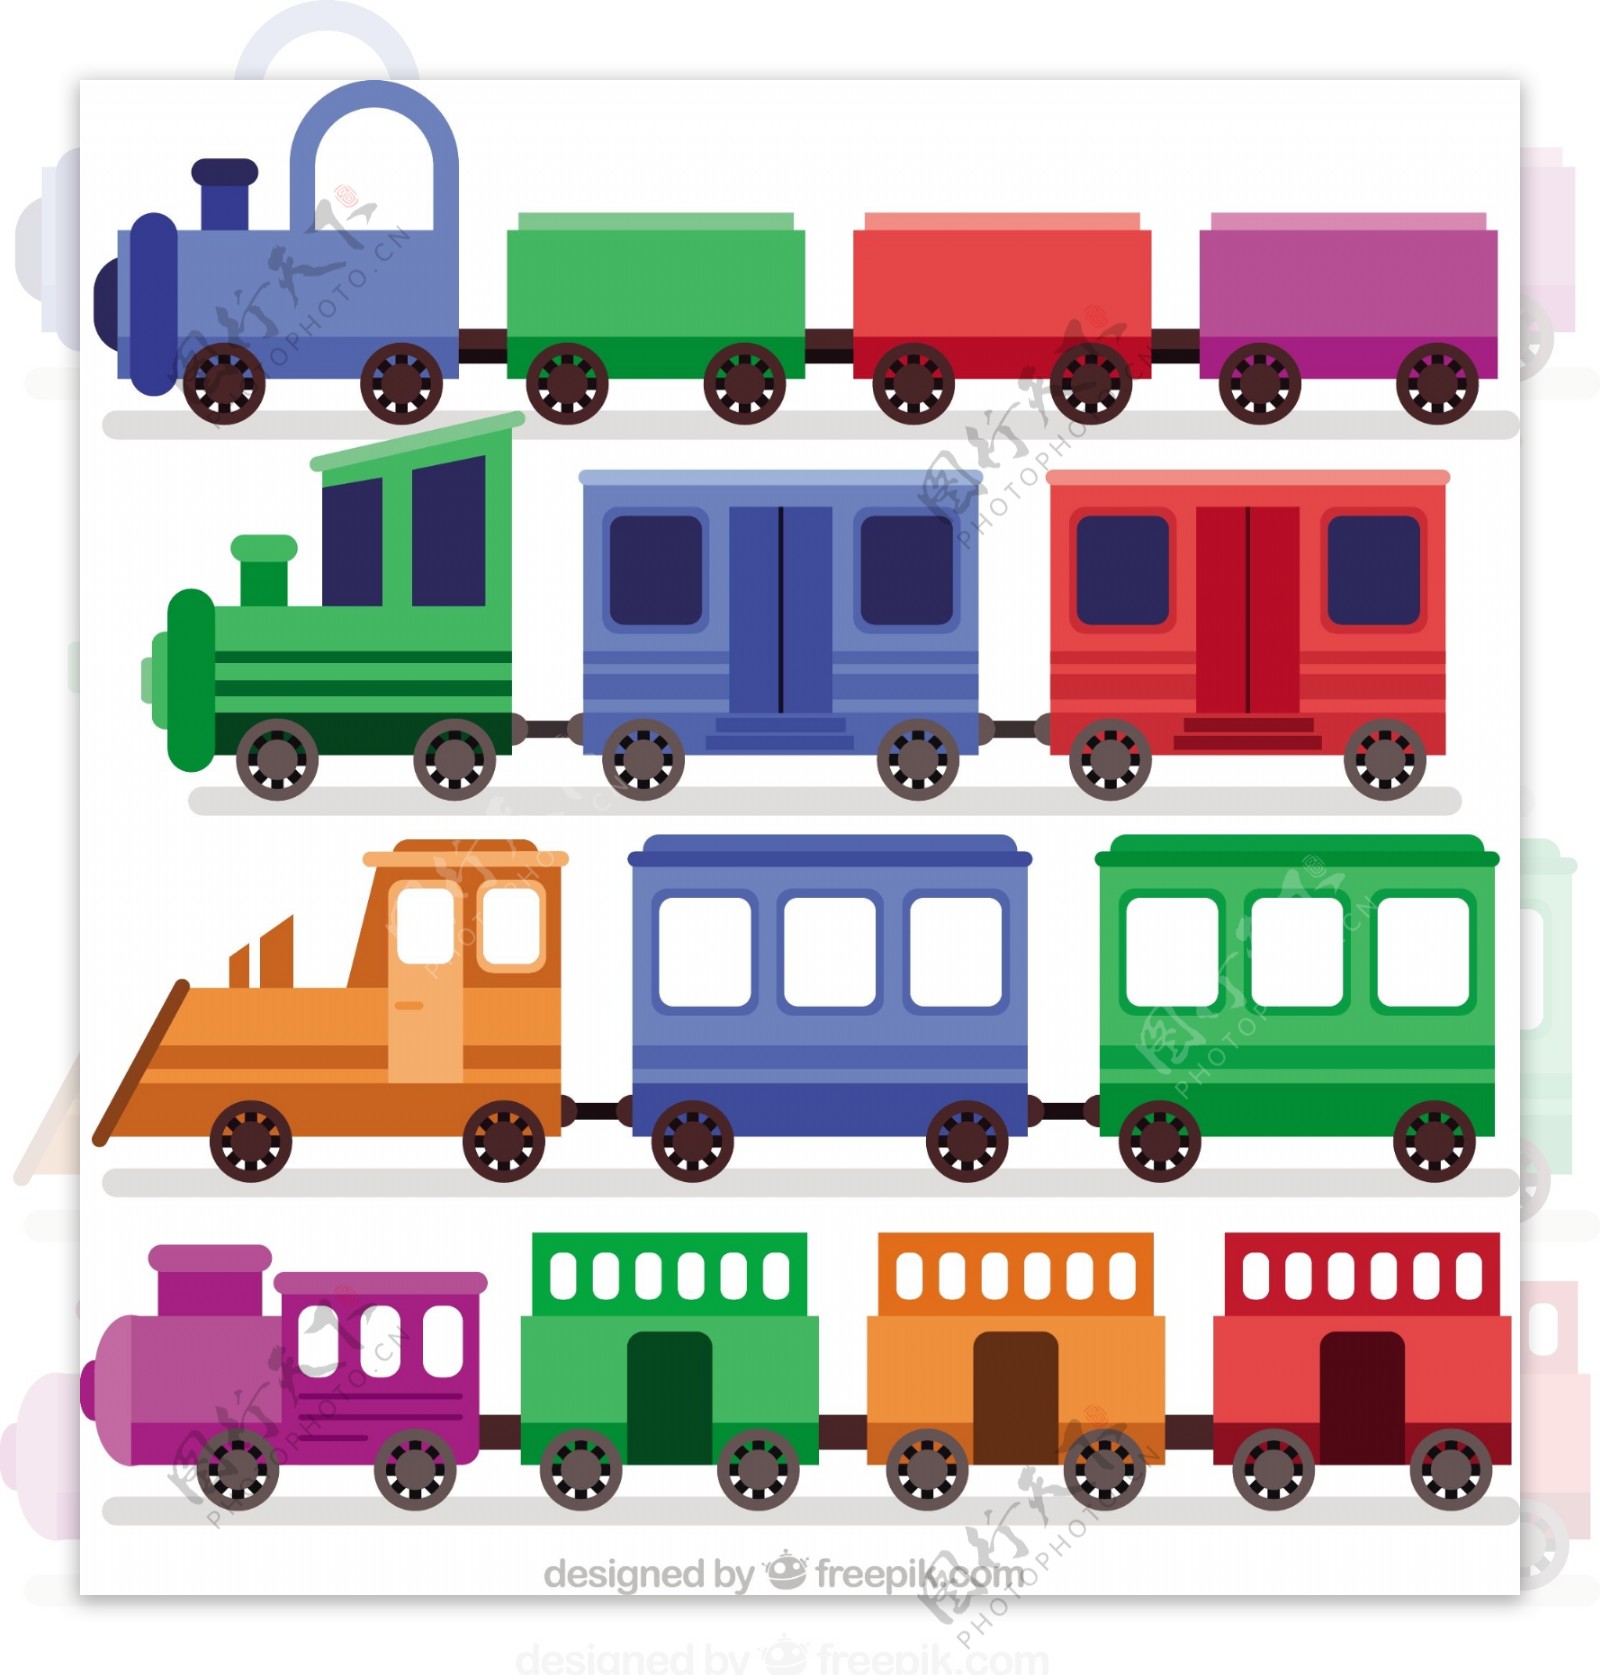 可爱的梦幻般彩色玩具火车矢量素材